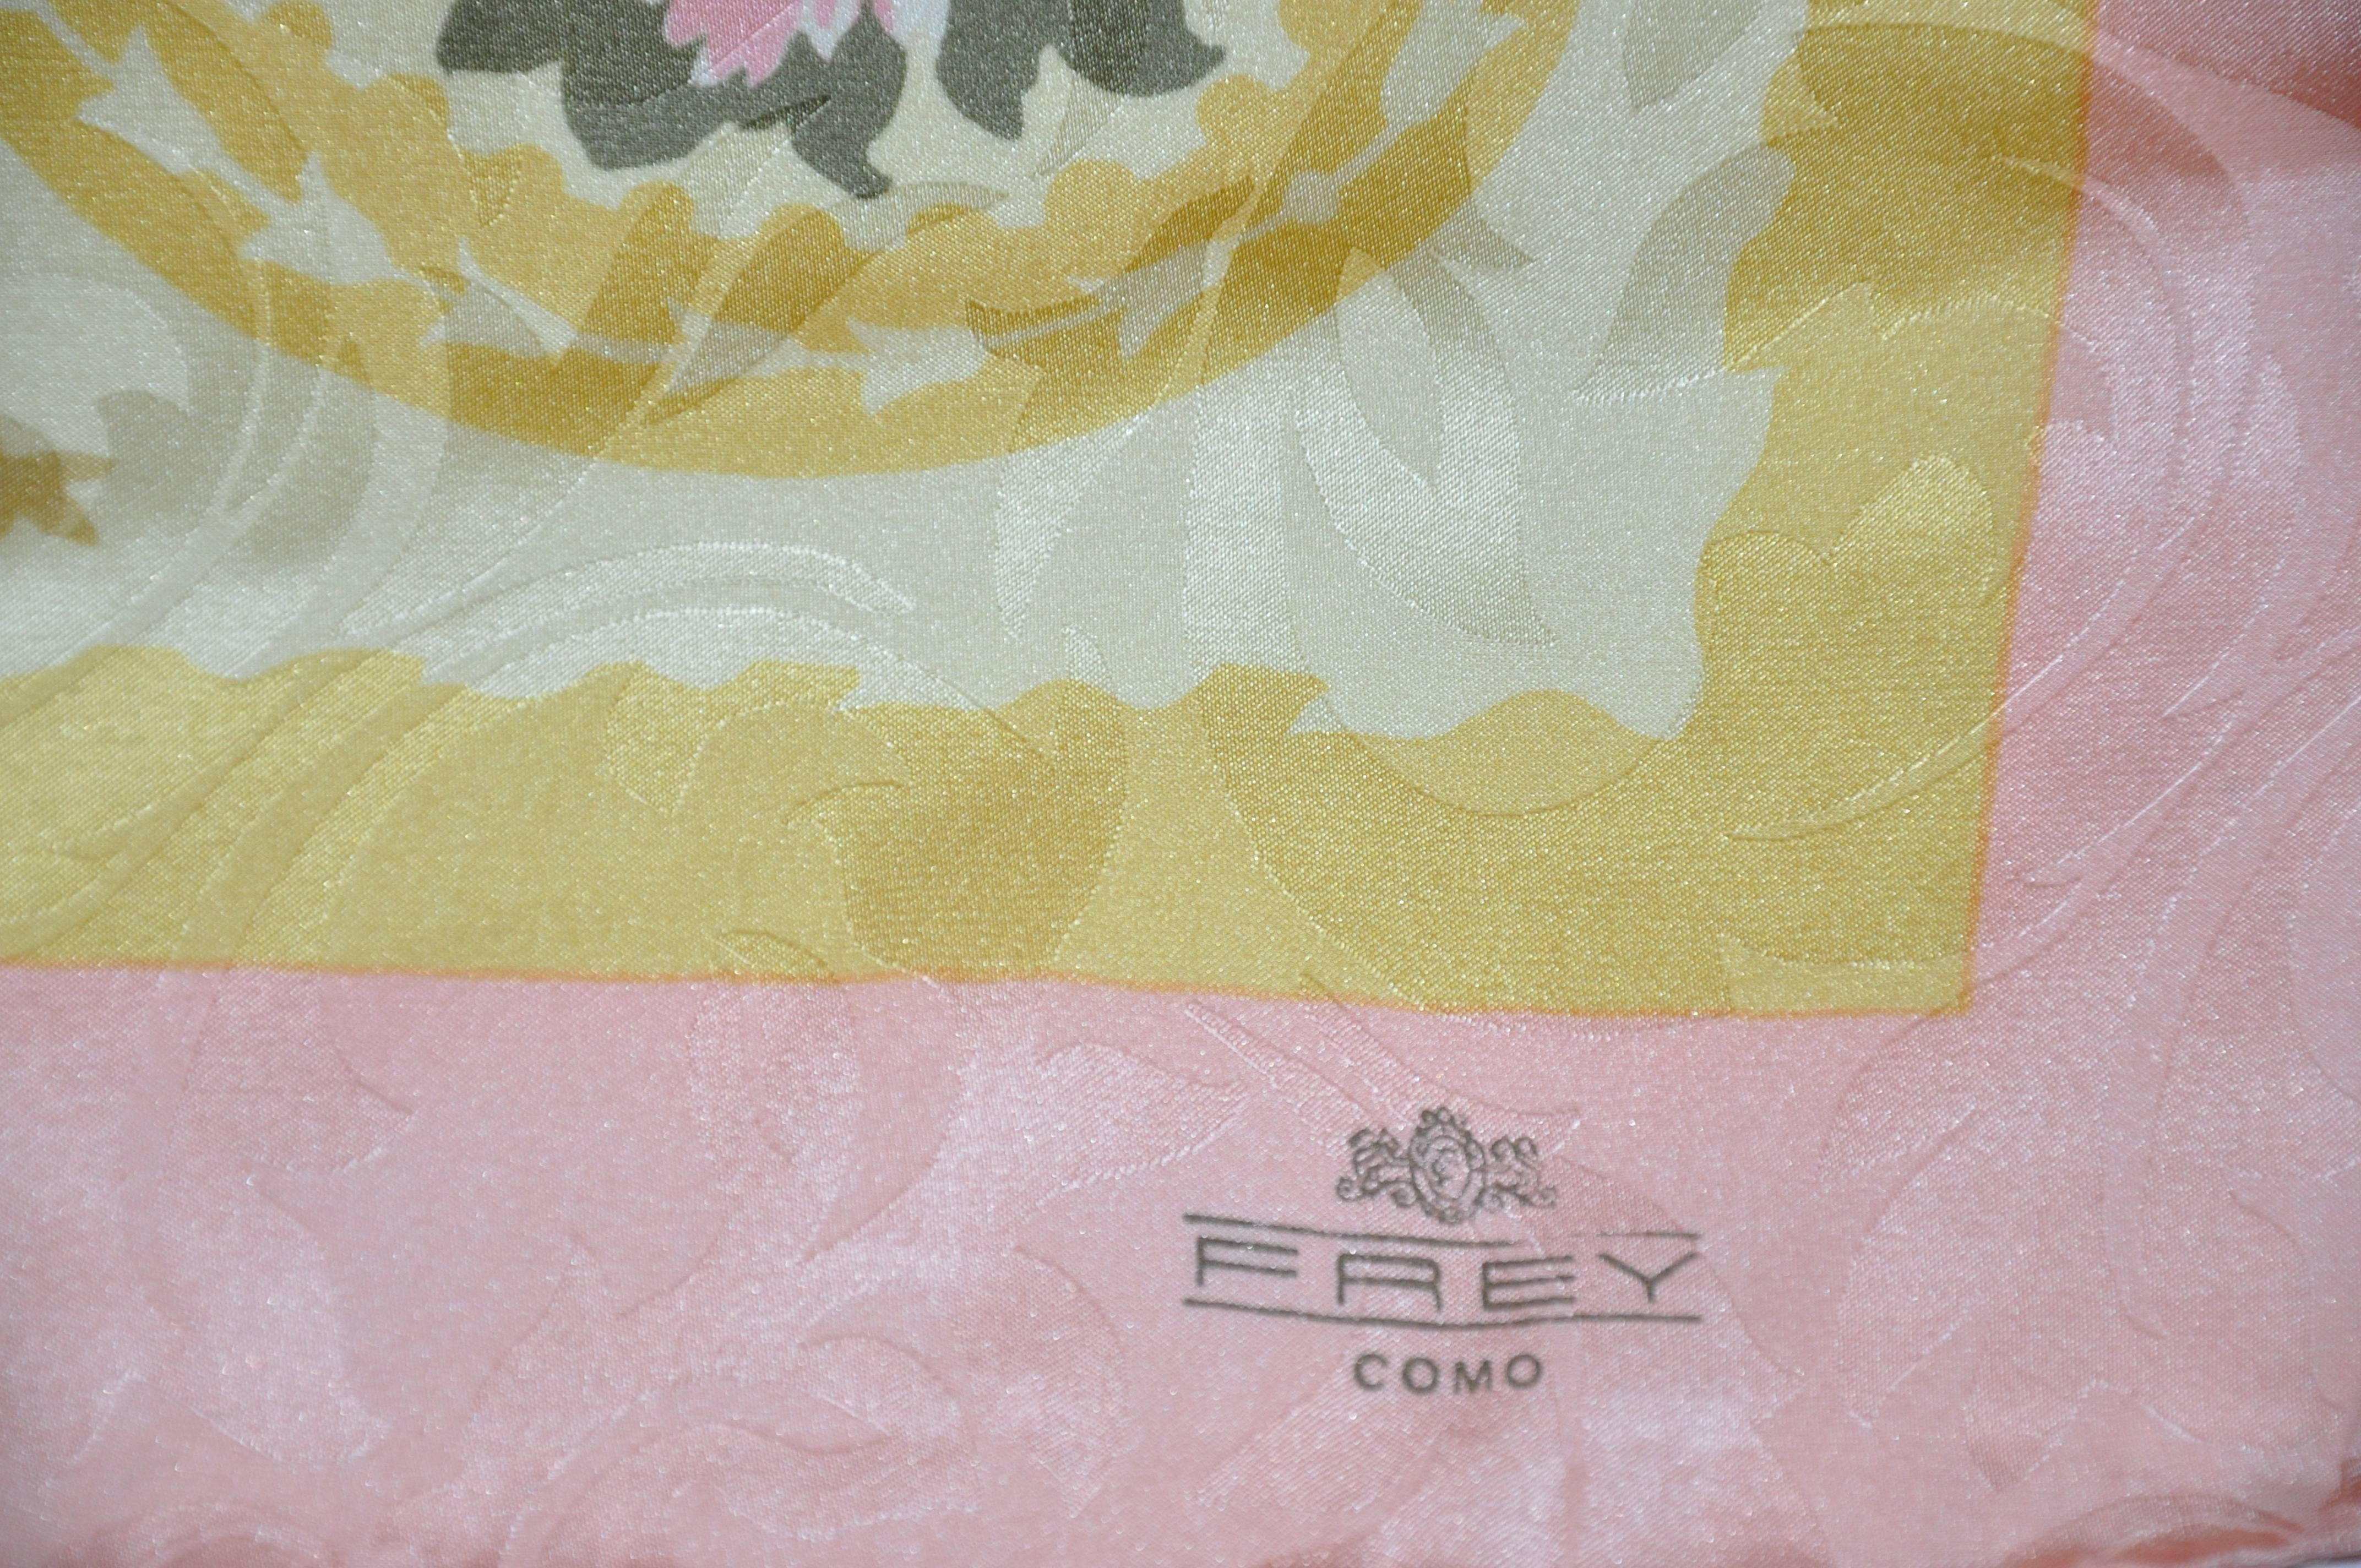         Frey (Como) wonderfully elegant multi-color silk crepe di chine floral print scarf measures 34